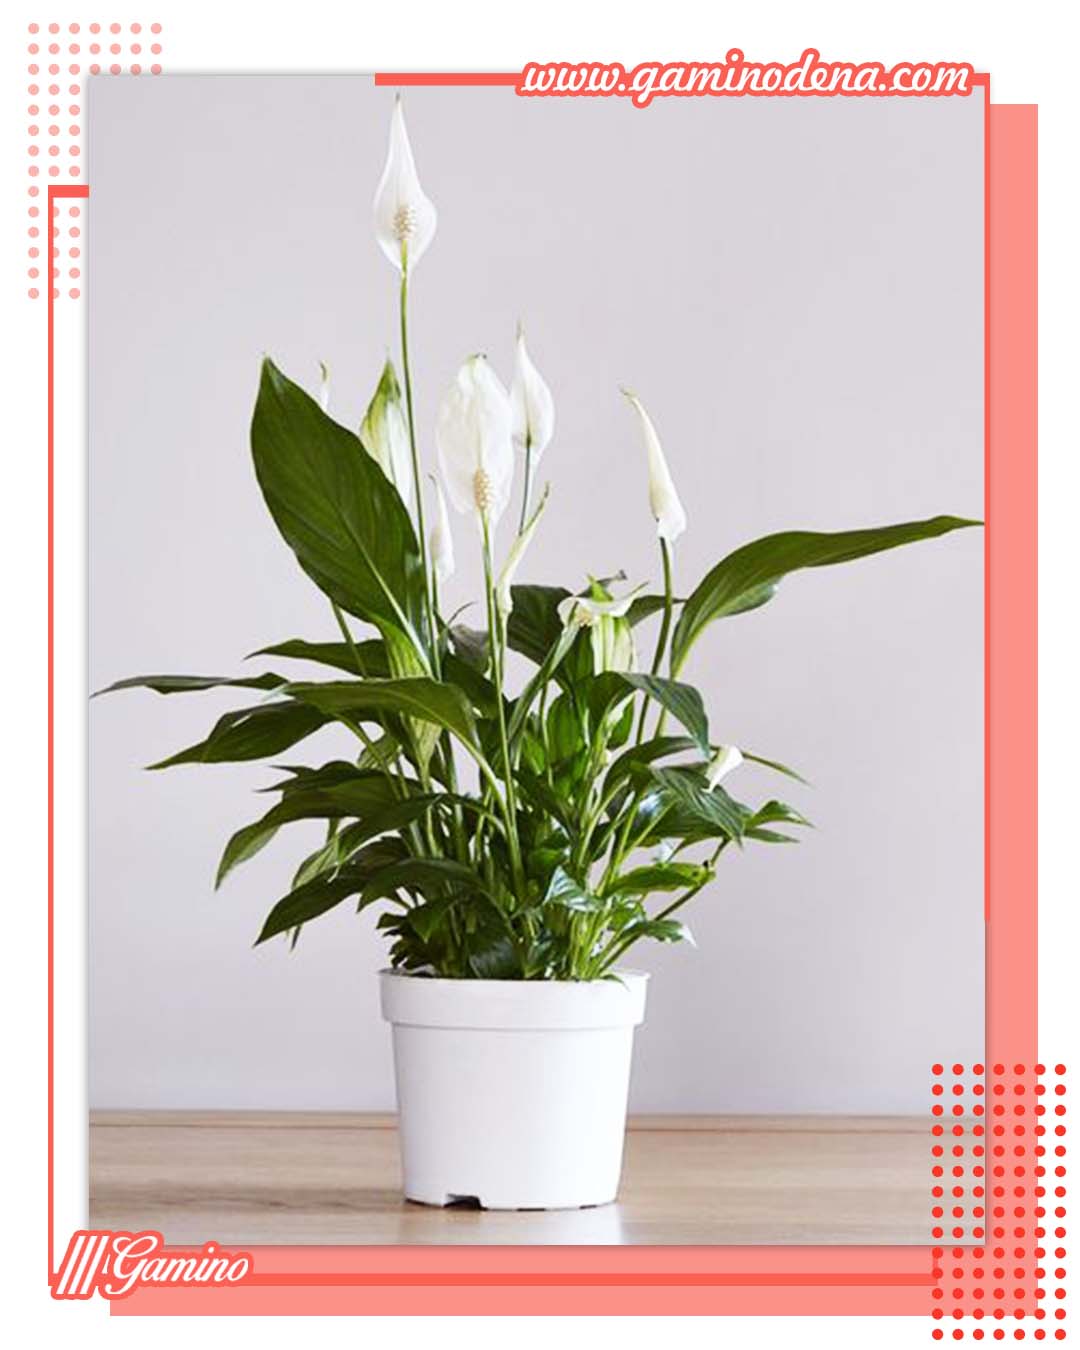 اسپاتی فیلوم بهترین گل های آپارتمانی زیبا و مقاوم + مفید برای سلامتی